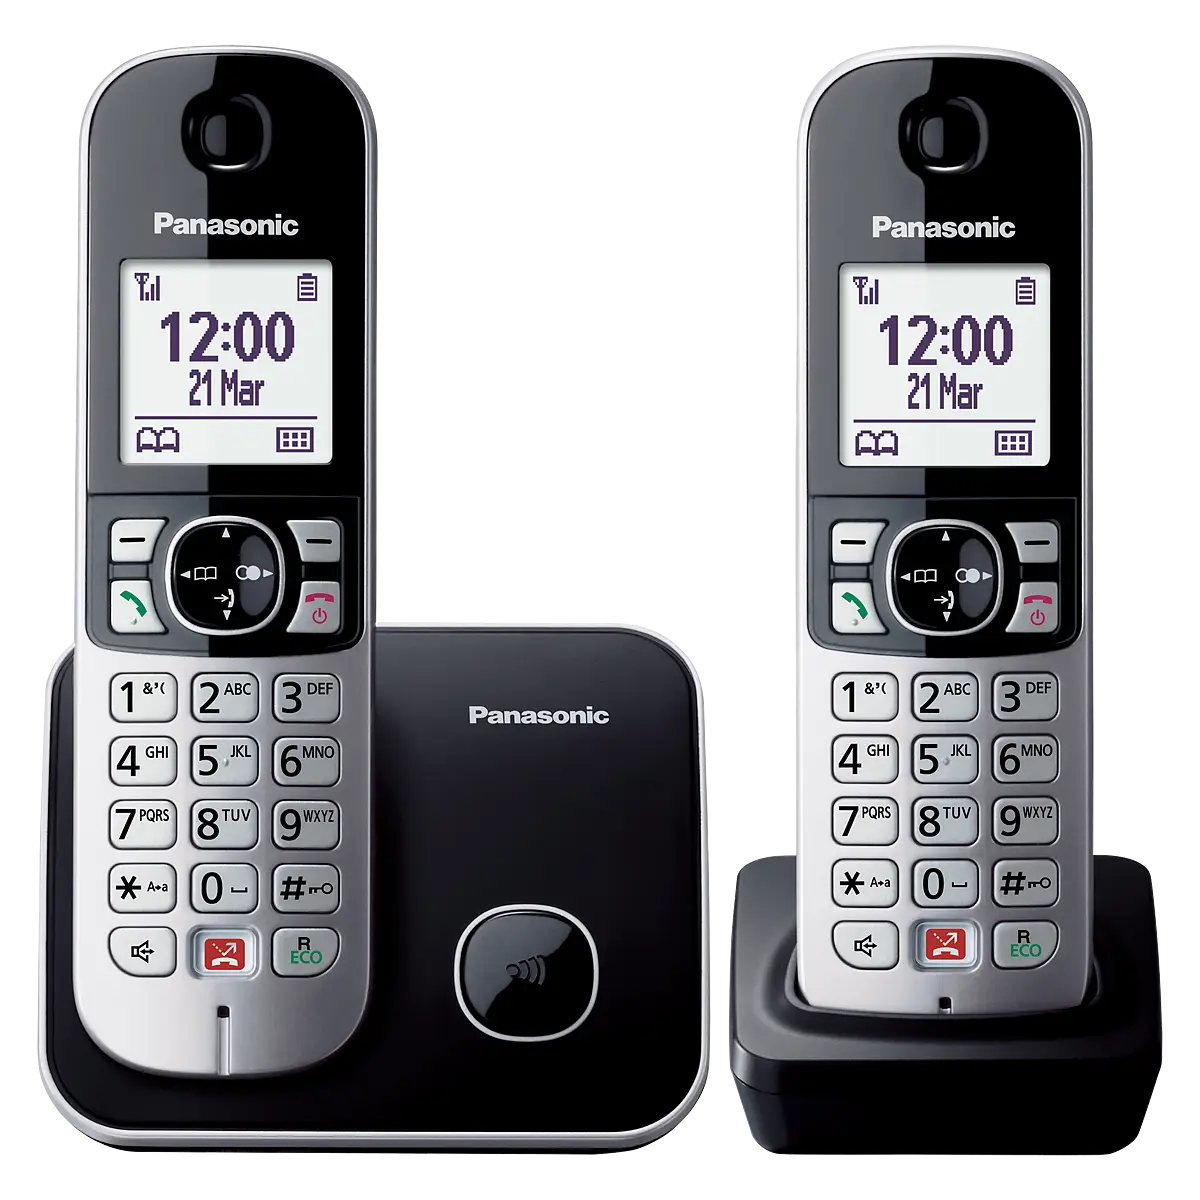 Teléfono Inalámbrico - Panasonic KX-TGA685EXB Negro Manos libres